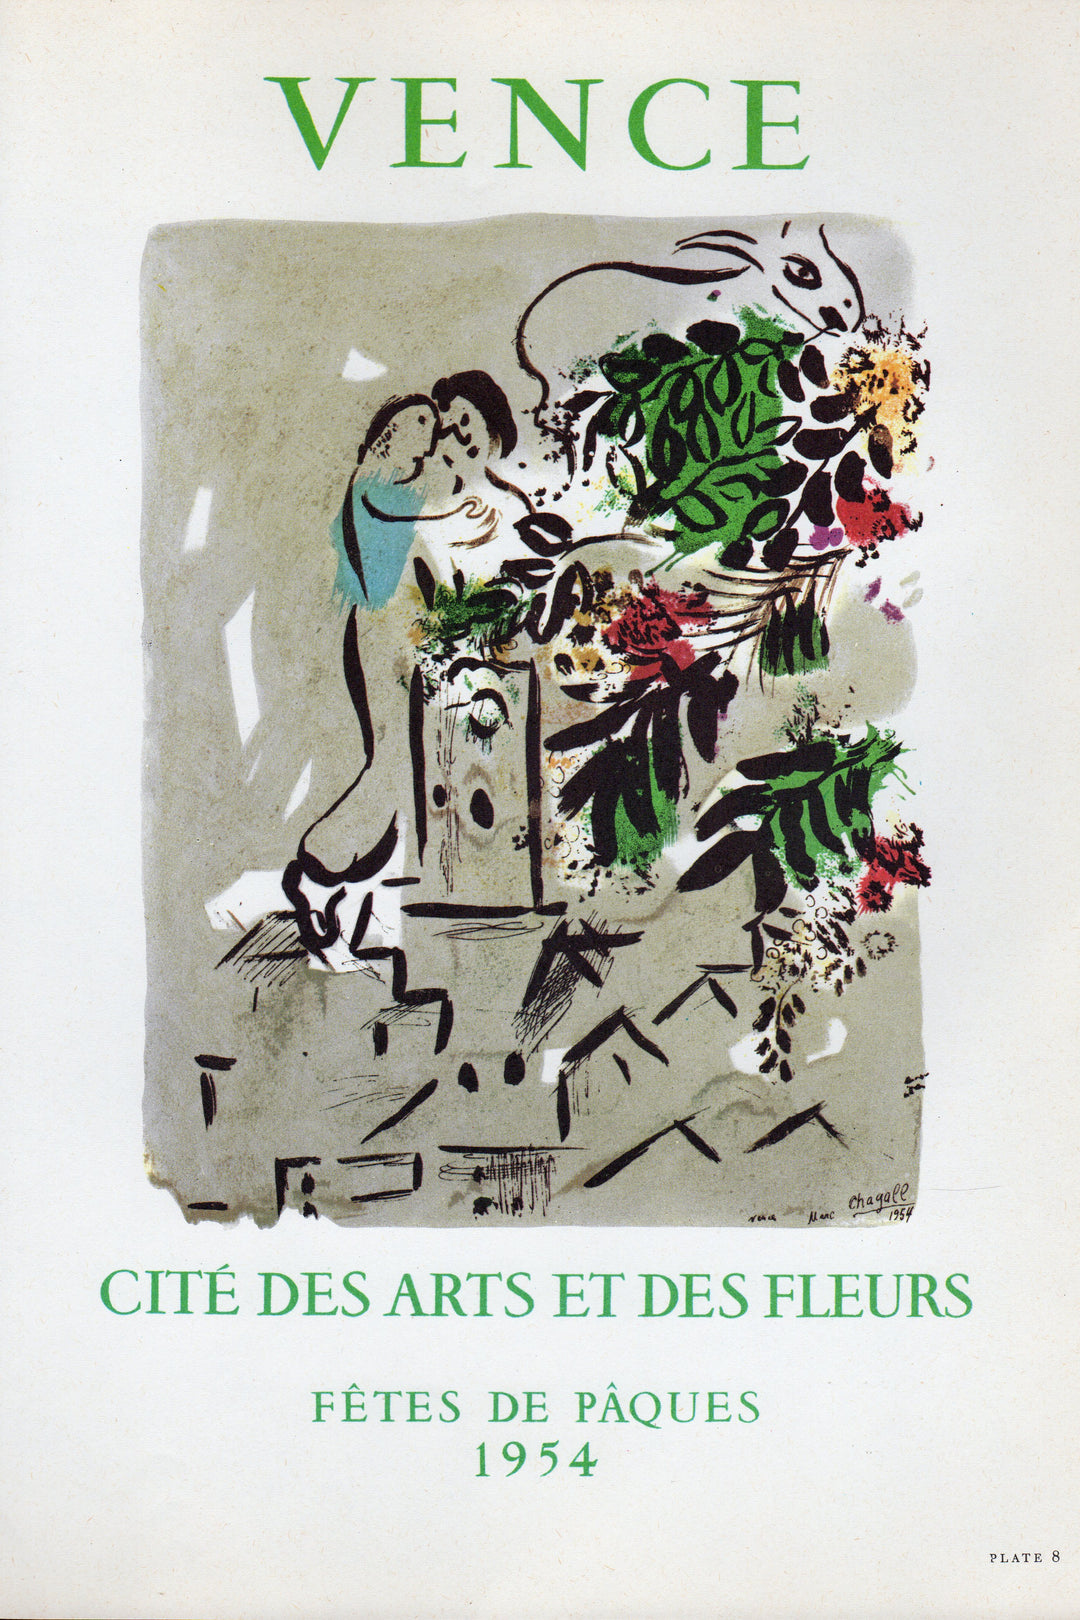 Chagall Vence Fetes de Paques Vintage Graphic Art Poster Print